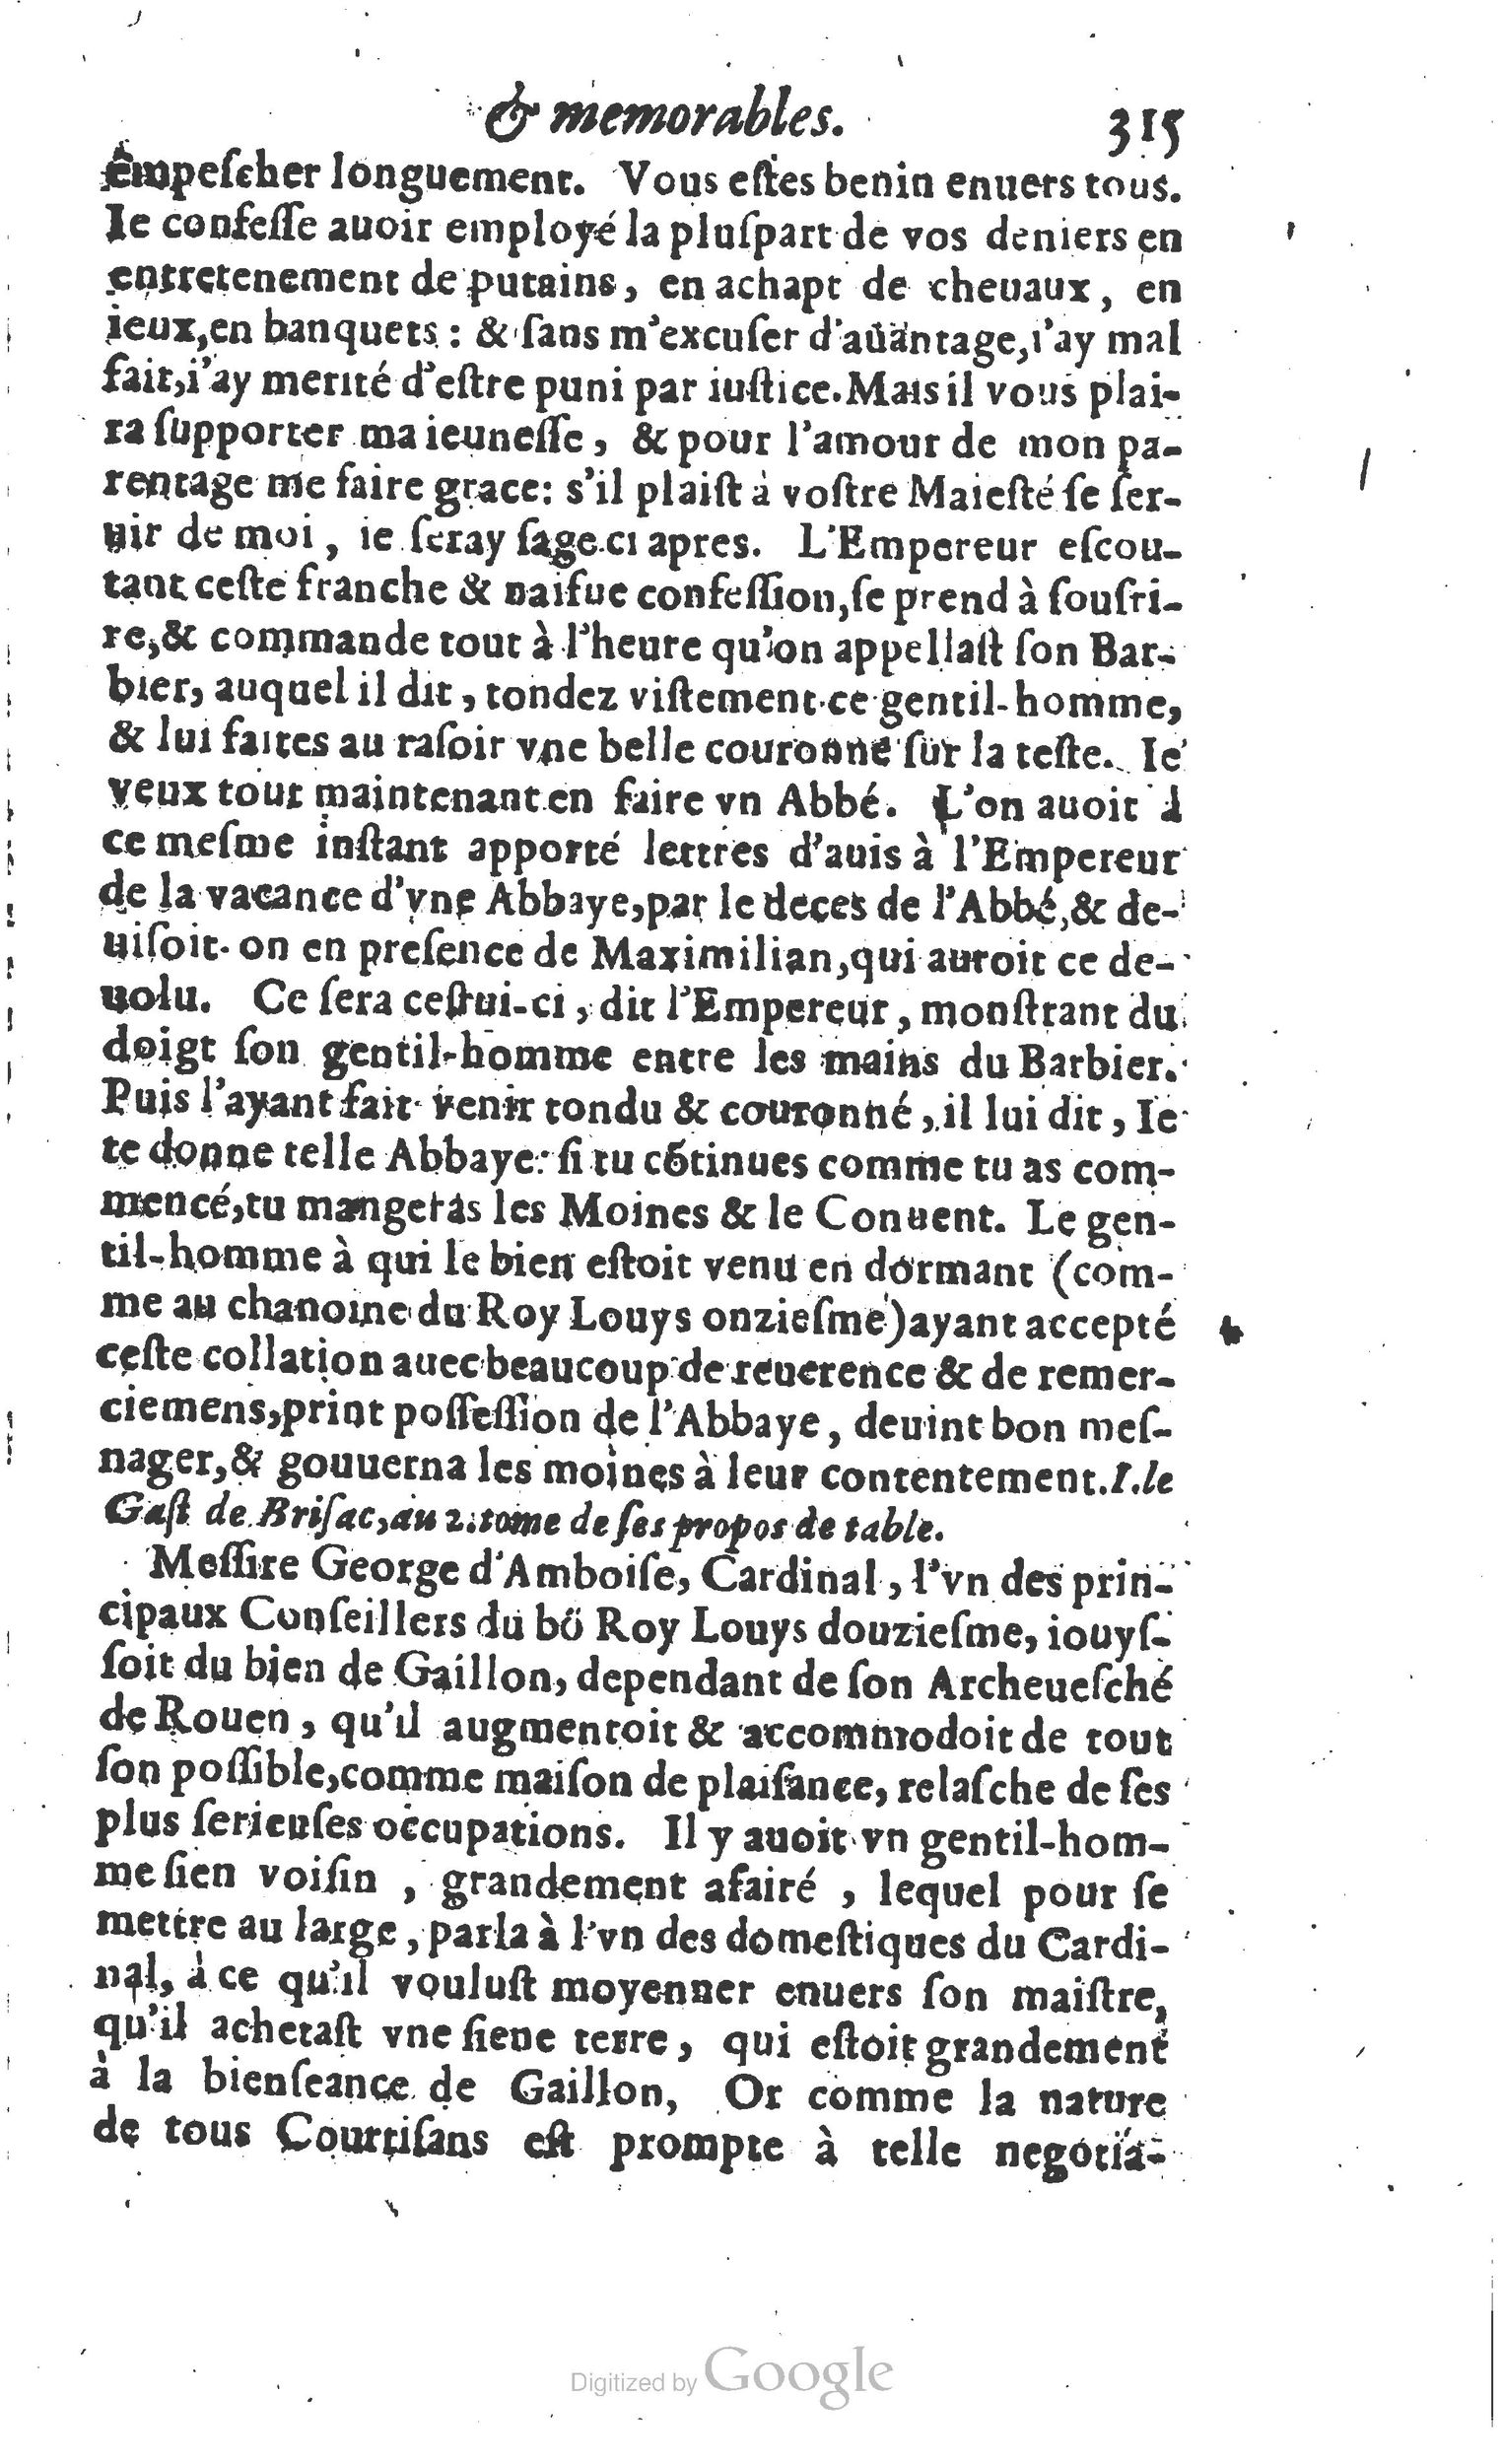 1610 Trésor d’histoires admirables et mémorables de nostre temps Marceau Princeton_Page_0336.jpg